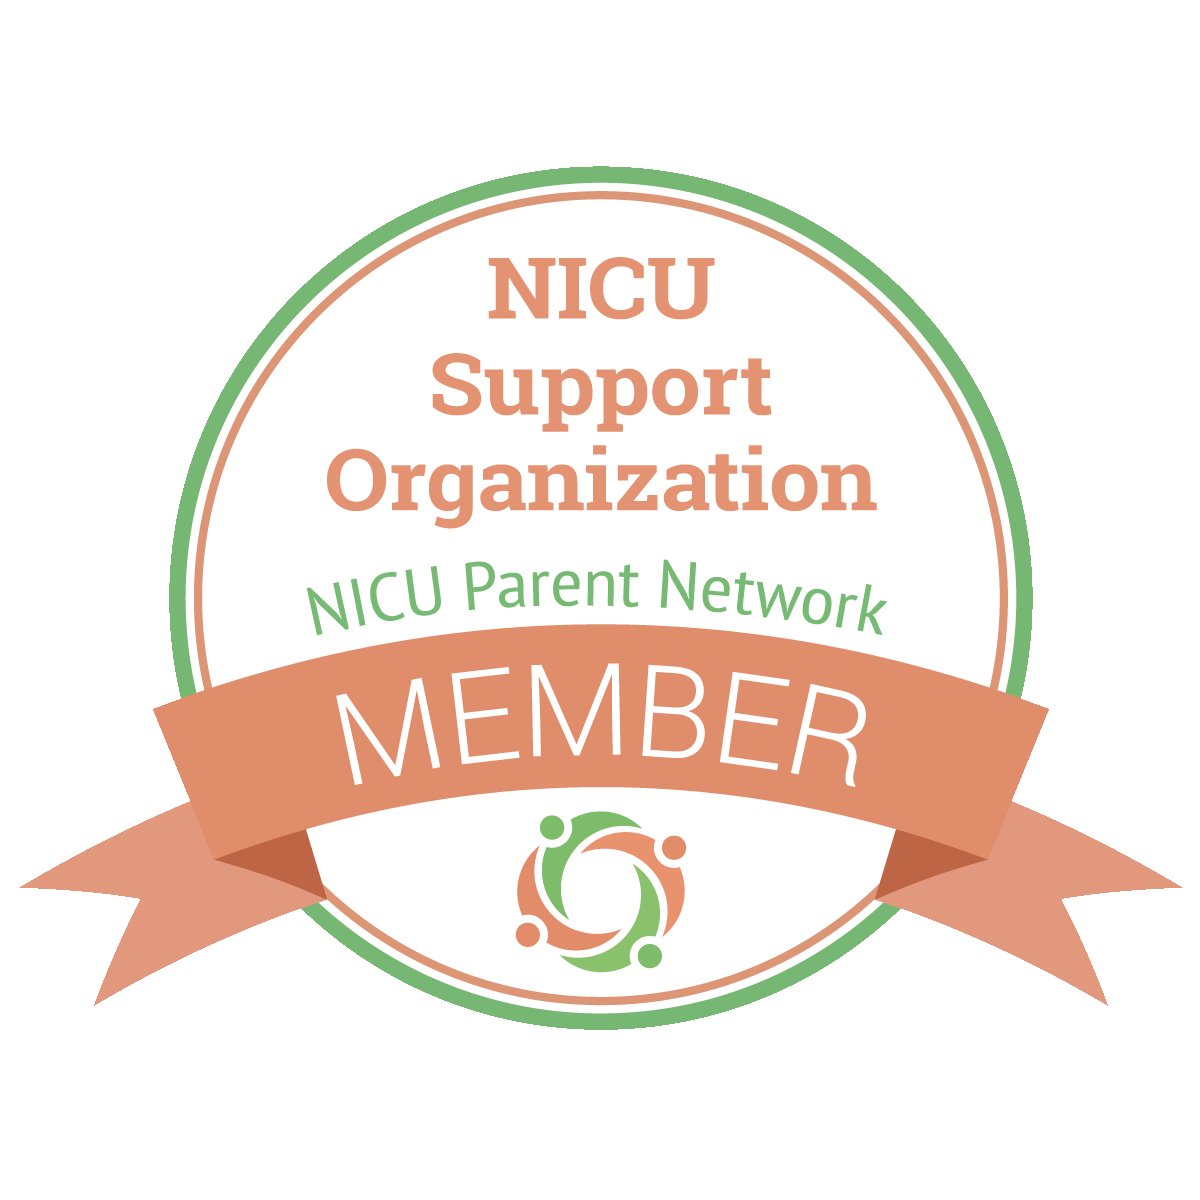 NICU Support Organization NICU Parent Network